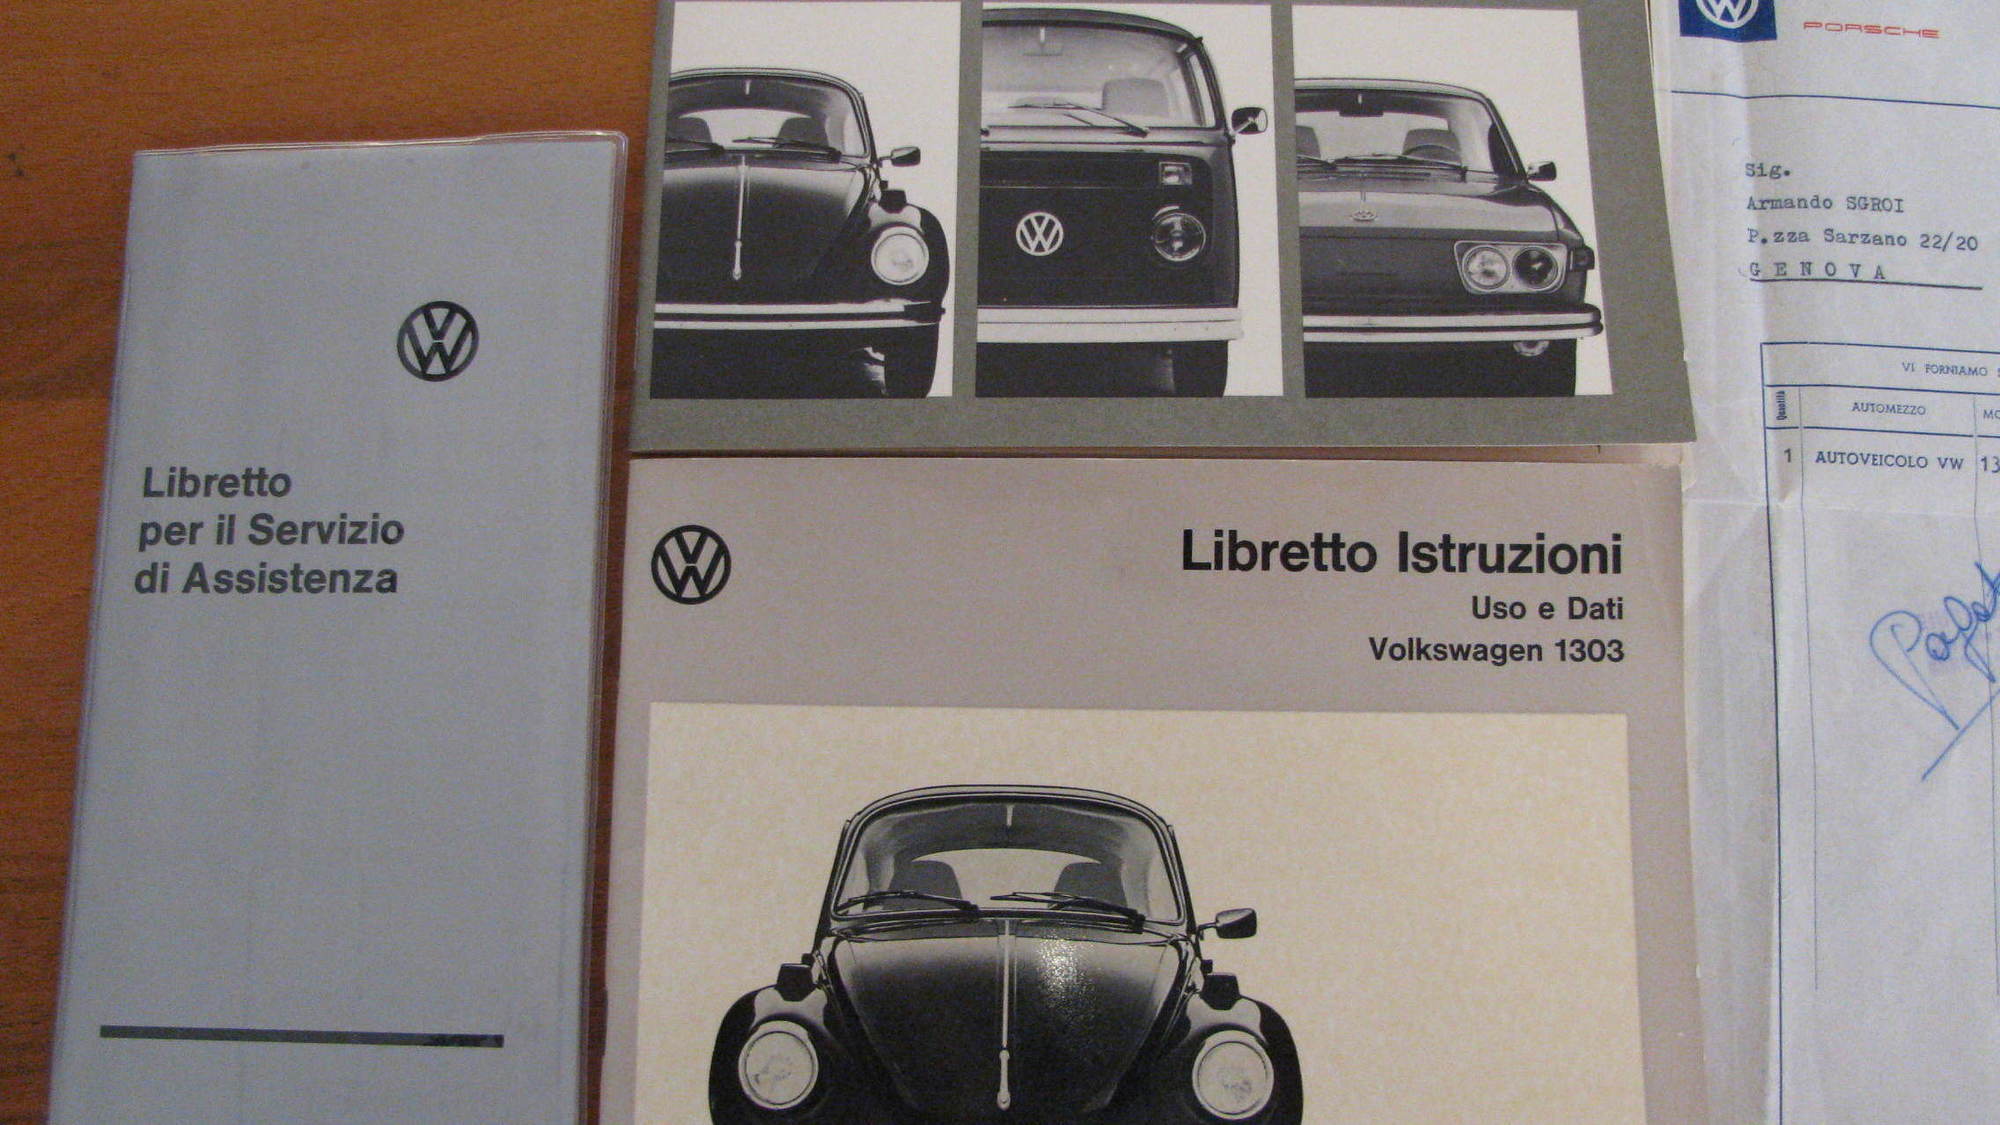 1974 Volkswagen Beetle with 90 kilometers